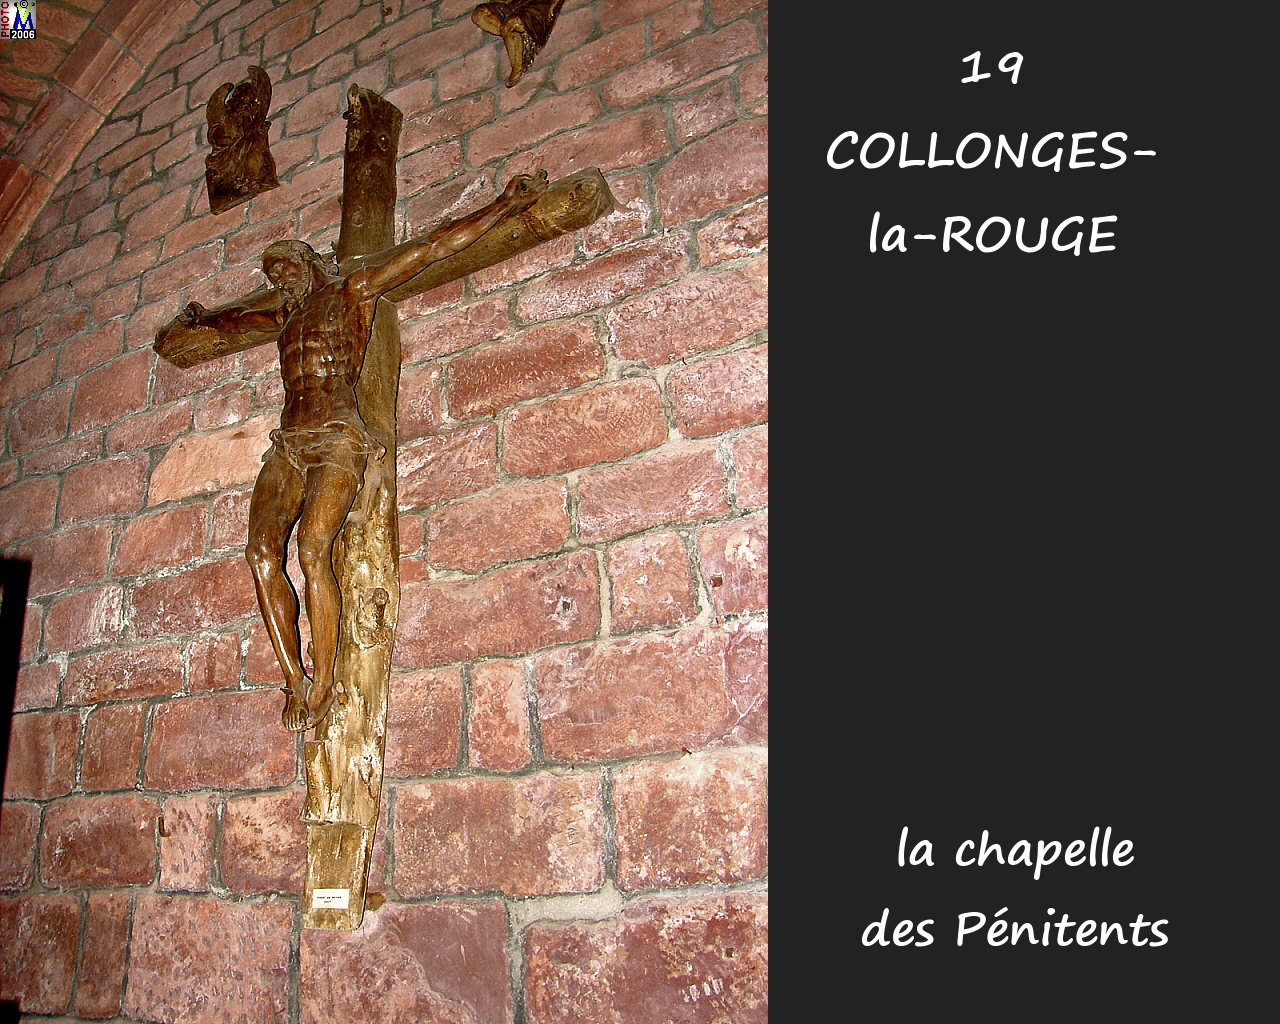 19COLLONGES-ROUGE_chapelle_220.jpg